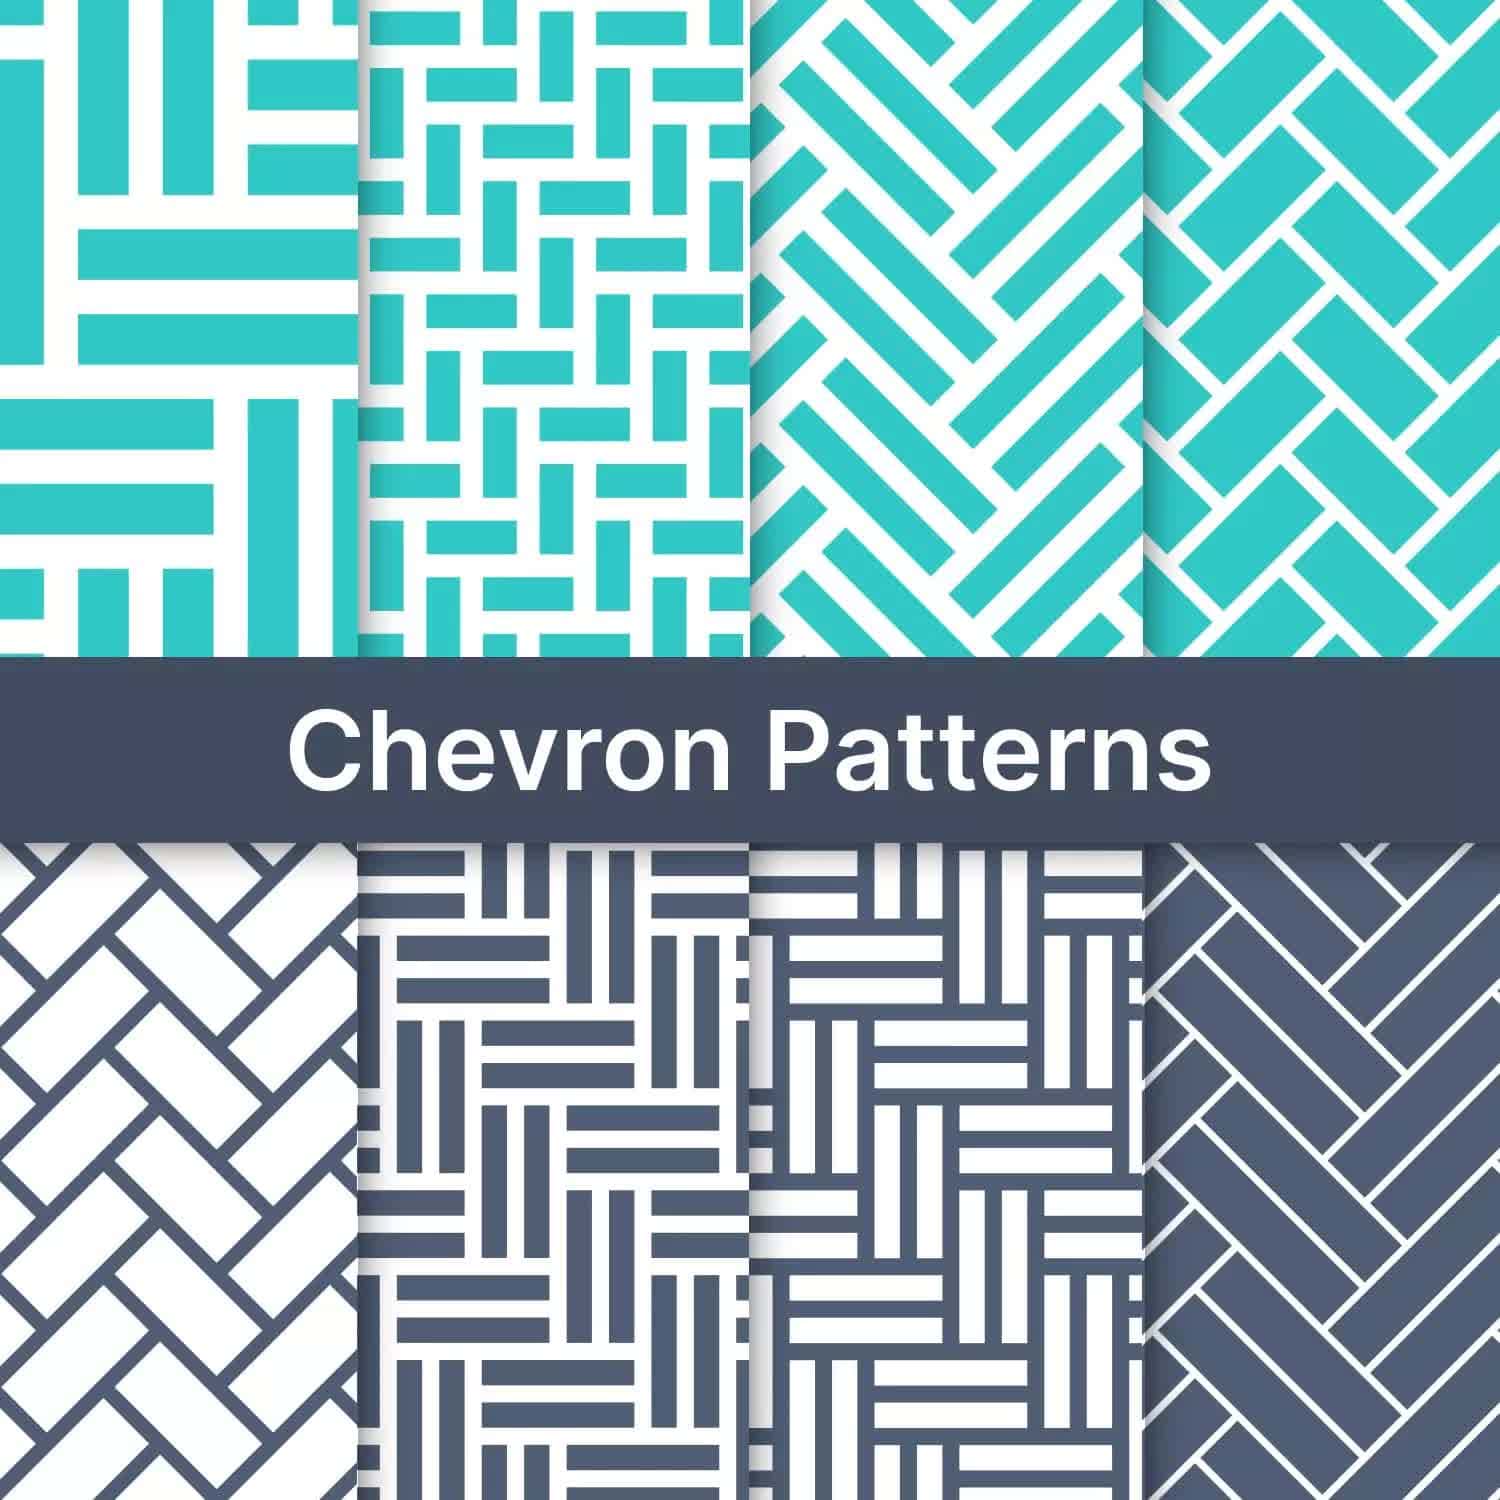 Chevron Patterns Preview 3.